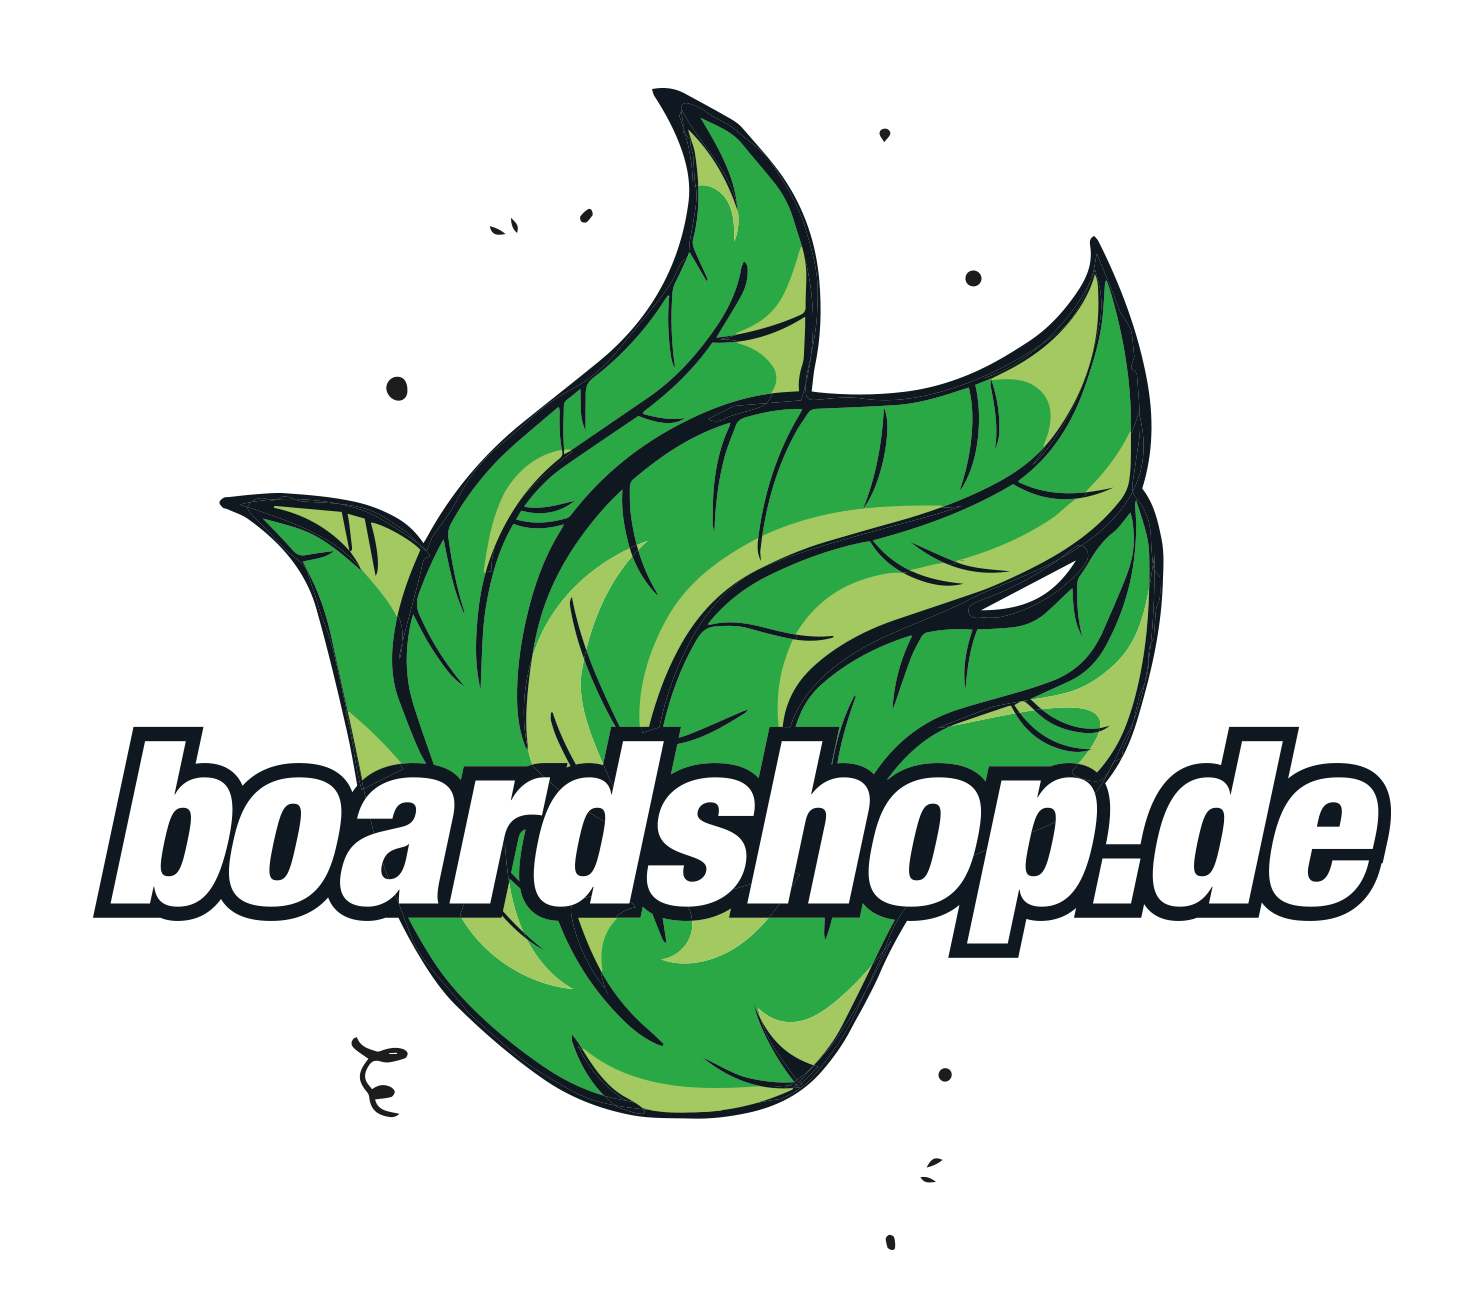 green und | Mode - Dein Onlineshop Ragwear Talin Chevron für faire Freiburg - Hose Snowboards und nachhaltige Mode - dusty Boardshop Hosen - boardshop.de Skateboards,